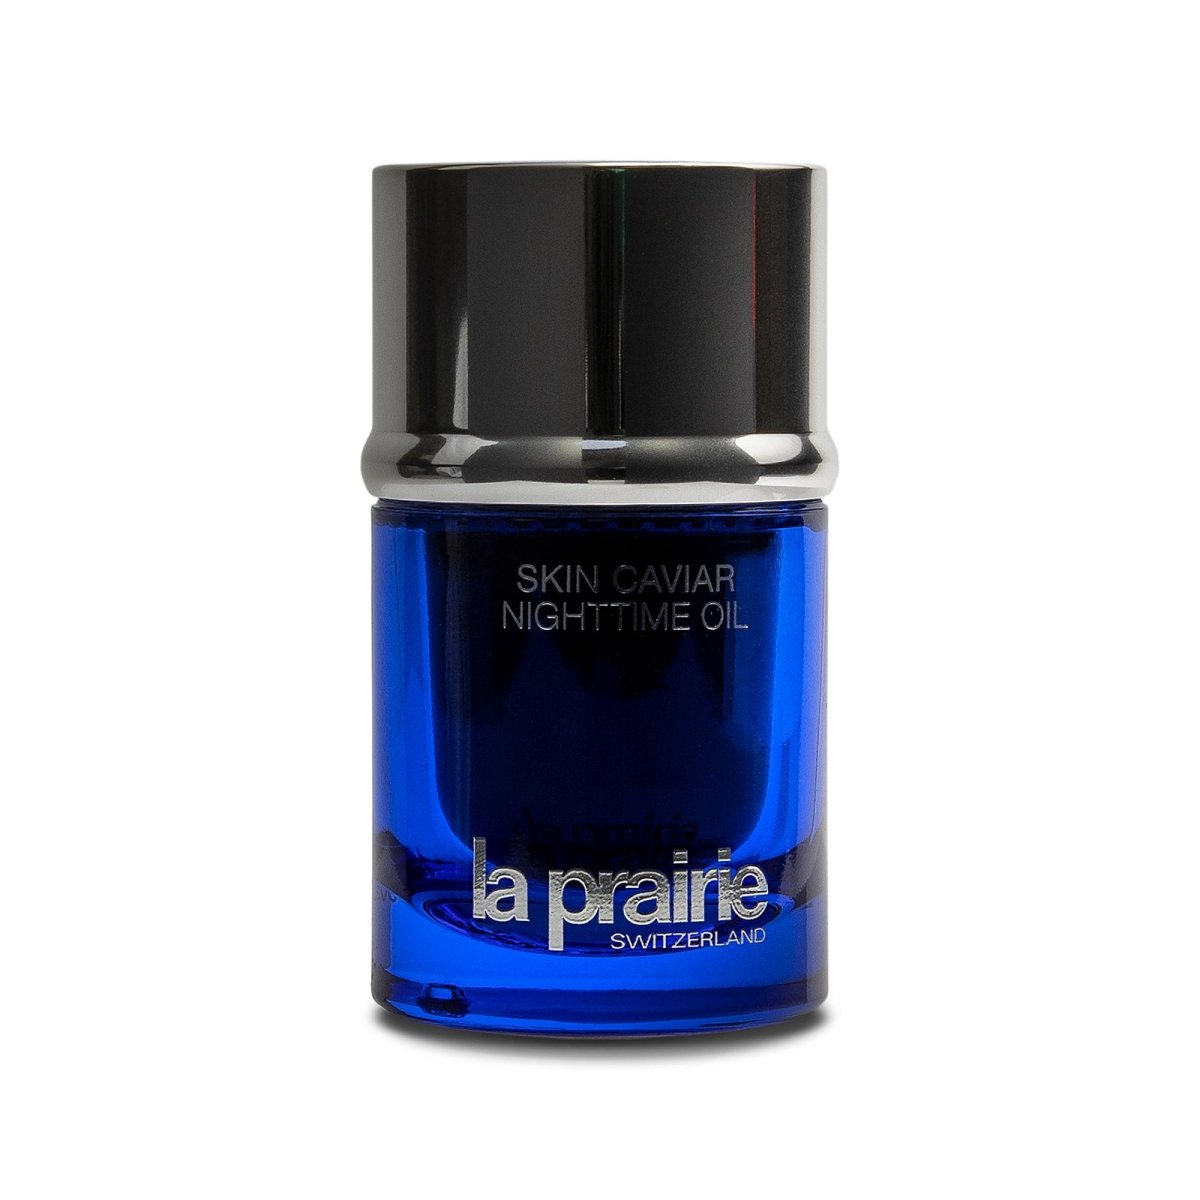 La Prairie Skin Caviar Nighttime Oil - SkincareEssentials